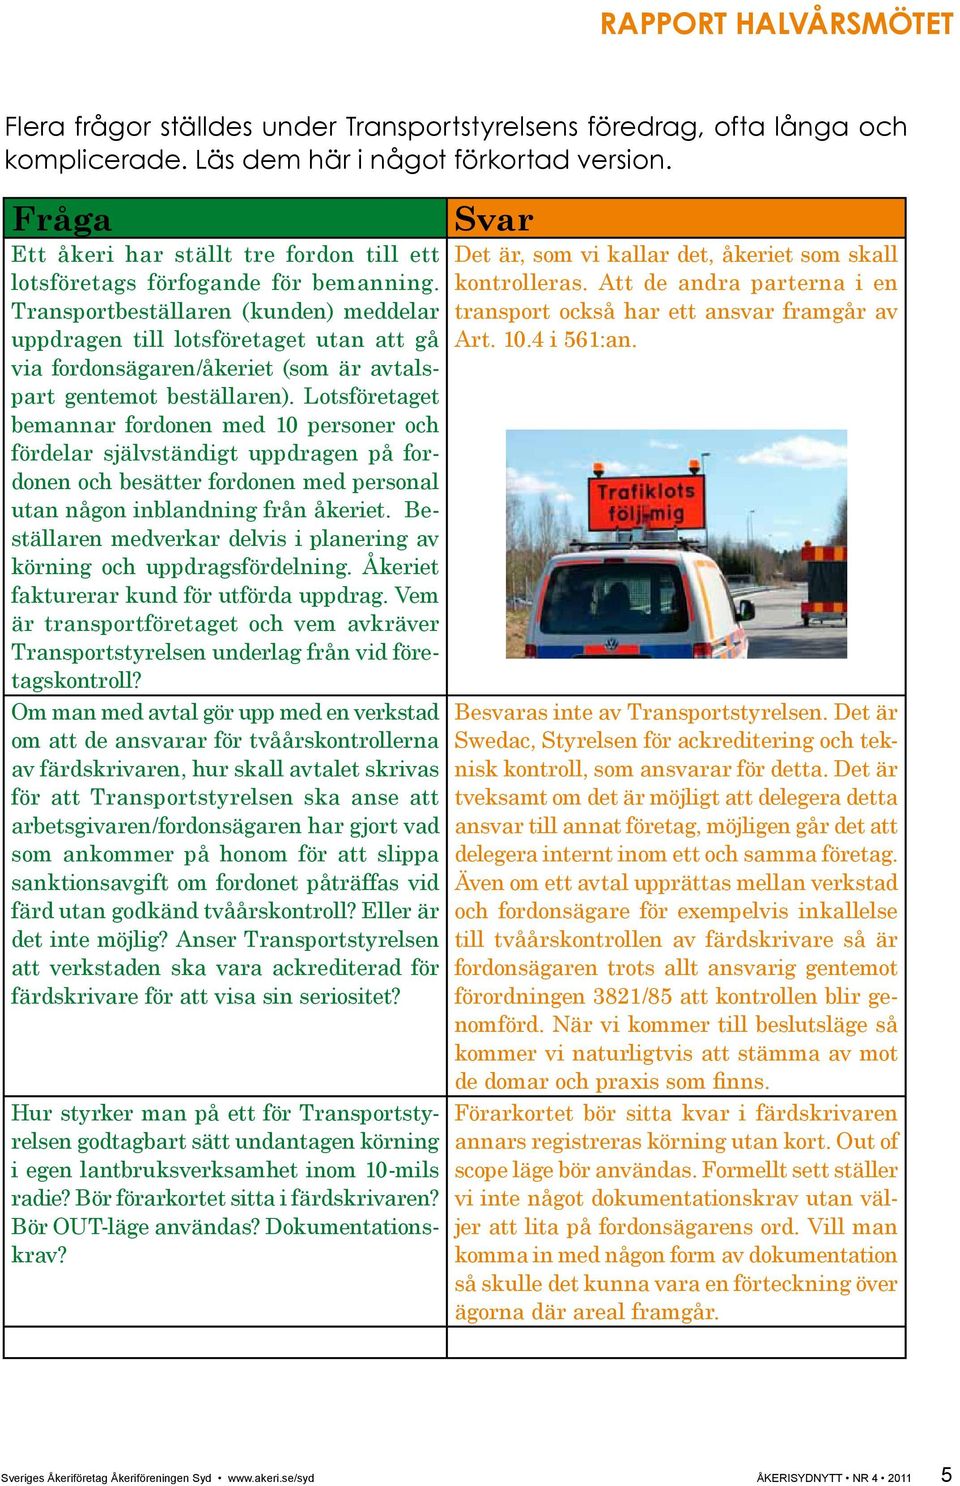 Transportbeställaren (kunden) meddelar uppdragen till lotsföretaget utan att gå via fordonsägaren/åkeriet (som är avtalspart gentemot beställaren).